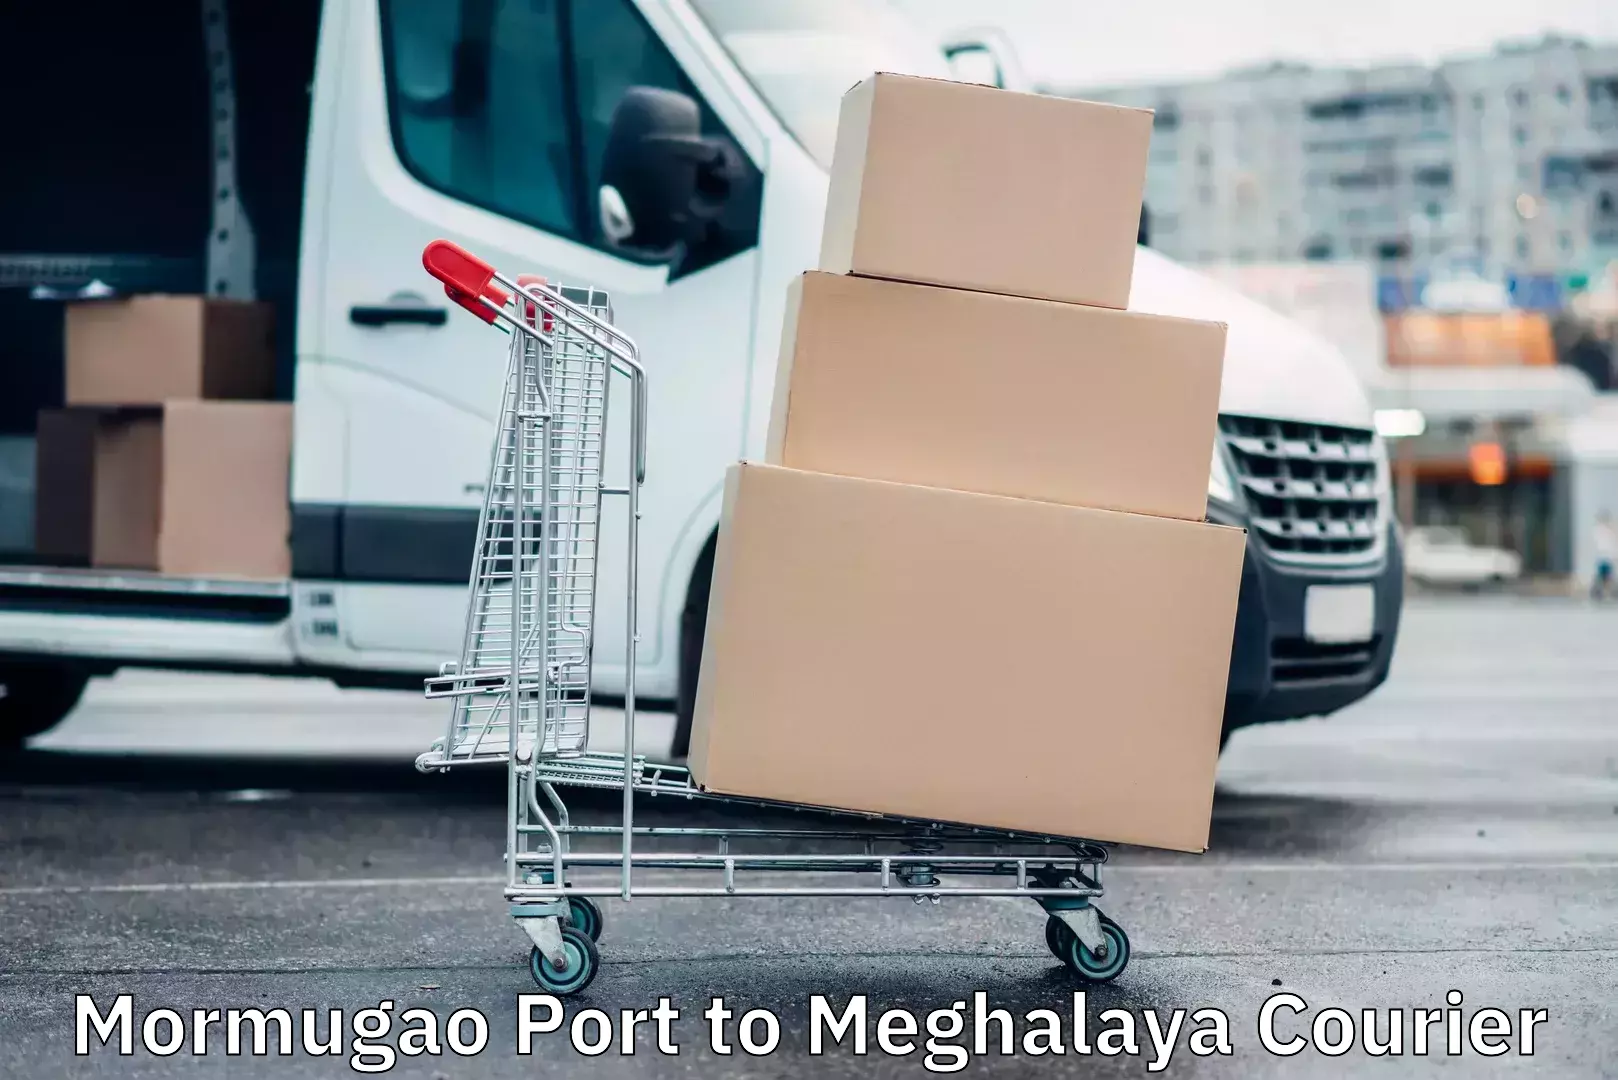 User-friendly courier app Mormugao Port to Meghalaya